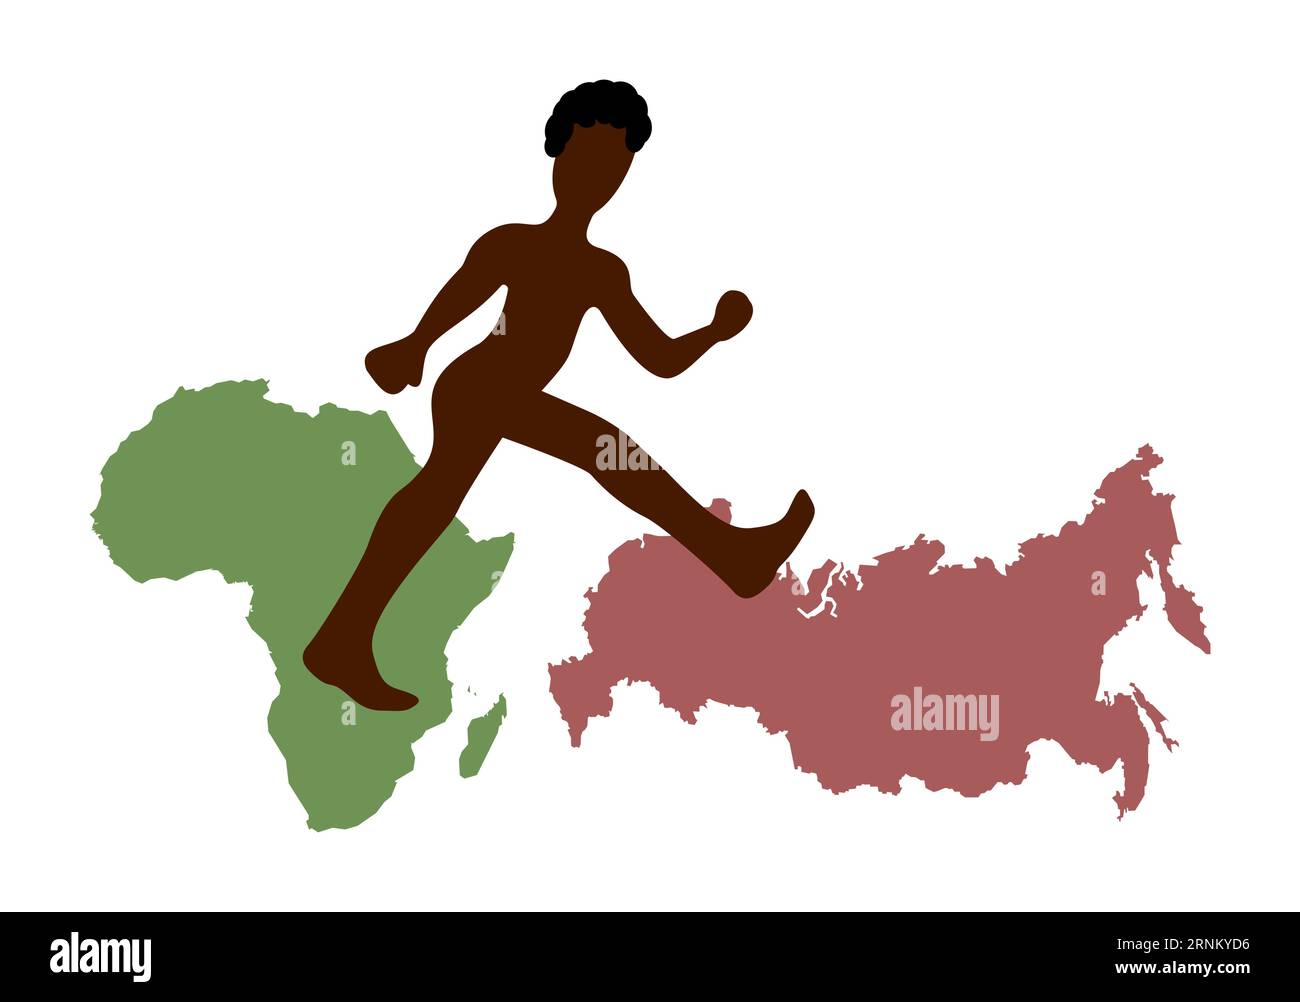 Afro-américain marchant de l'Afrique à la Russie. Silhouette afro-américaine, carte de l'Afrique, carte de la Russie. Illustration de Vecteur